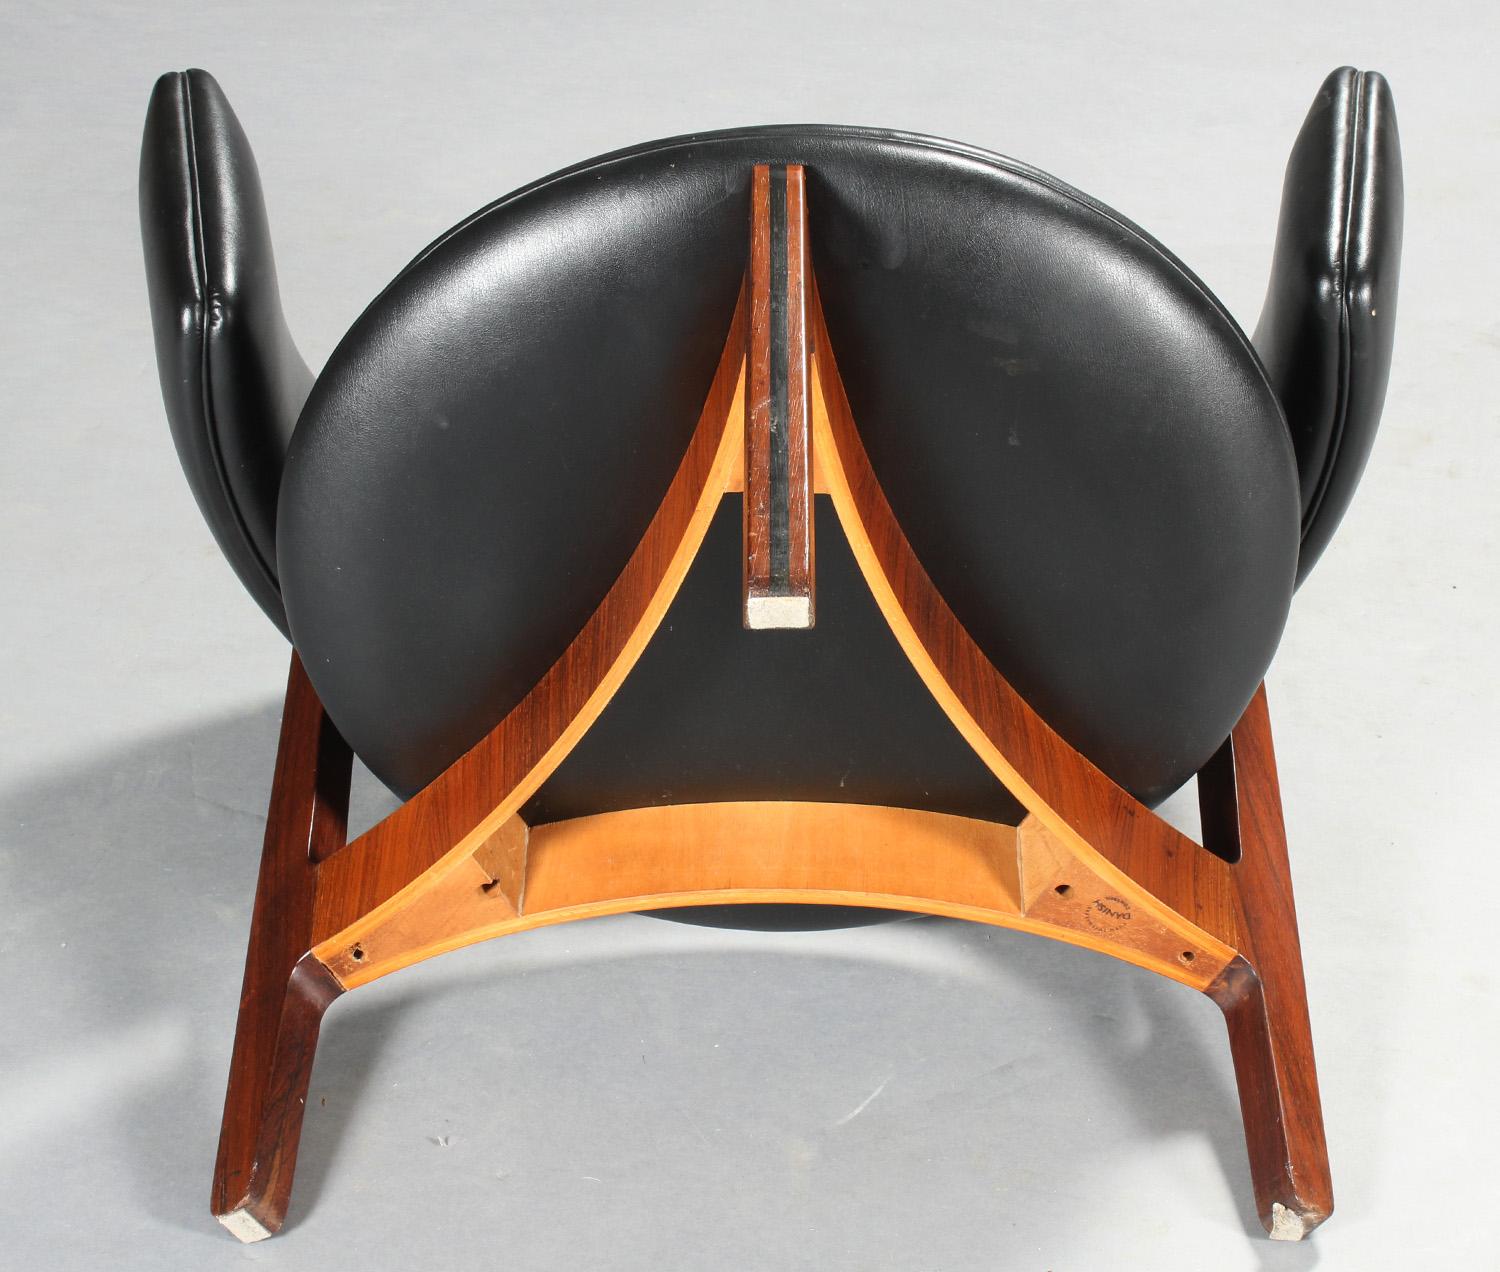 1960s Fully Restored Sven Ellekaer Danish Rosewood Easy Chair by Chr. Linneberg 1